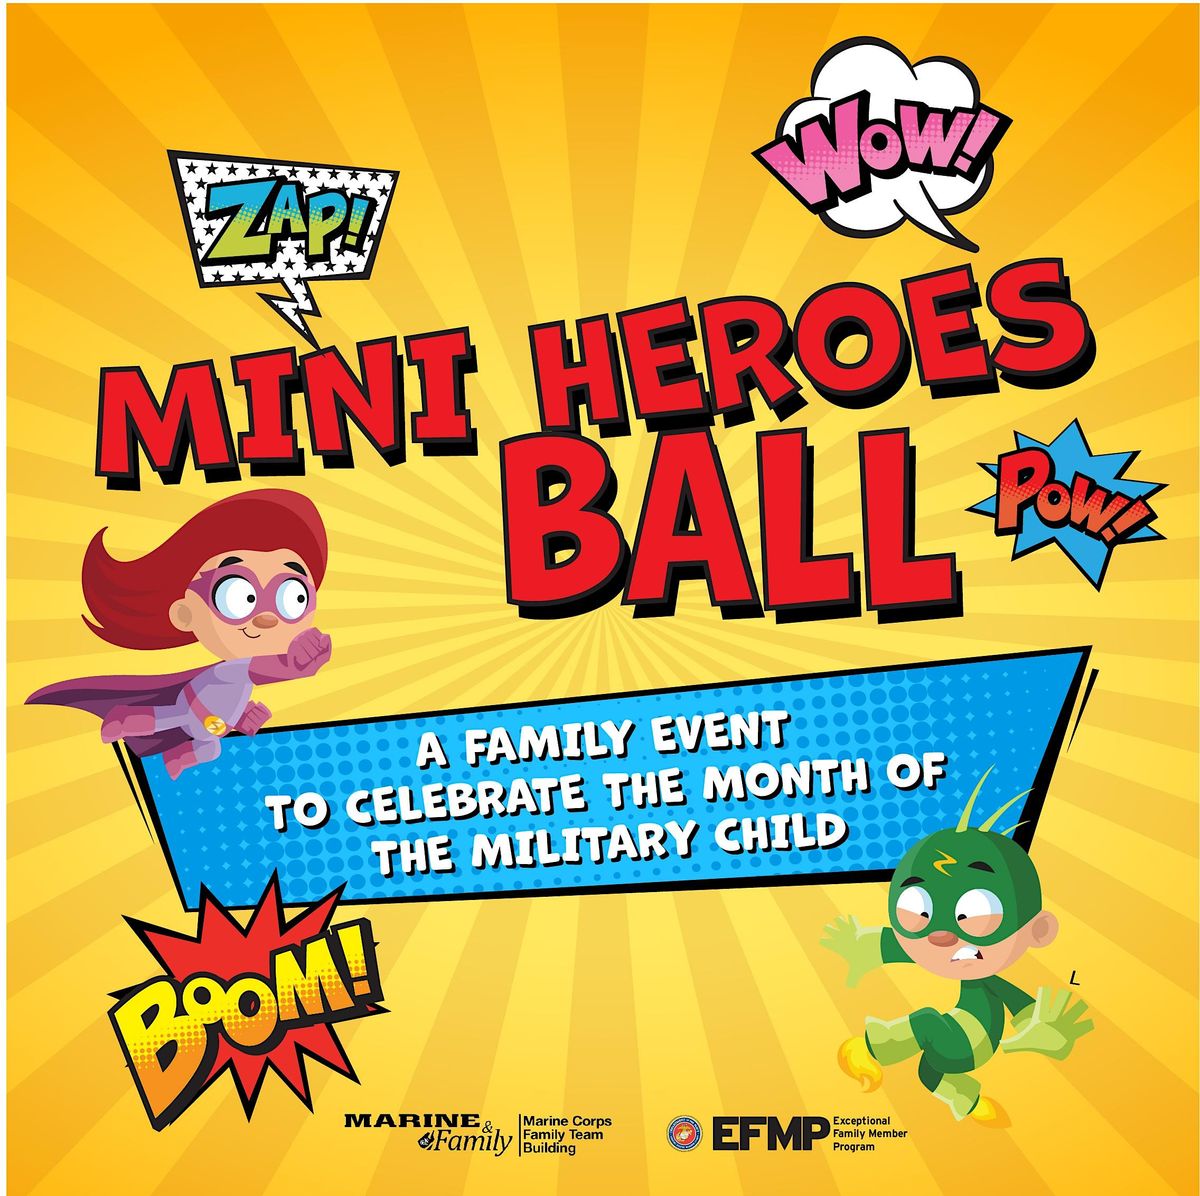 Mini Heroes Ball